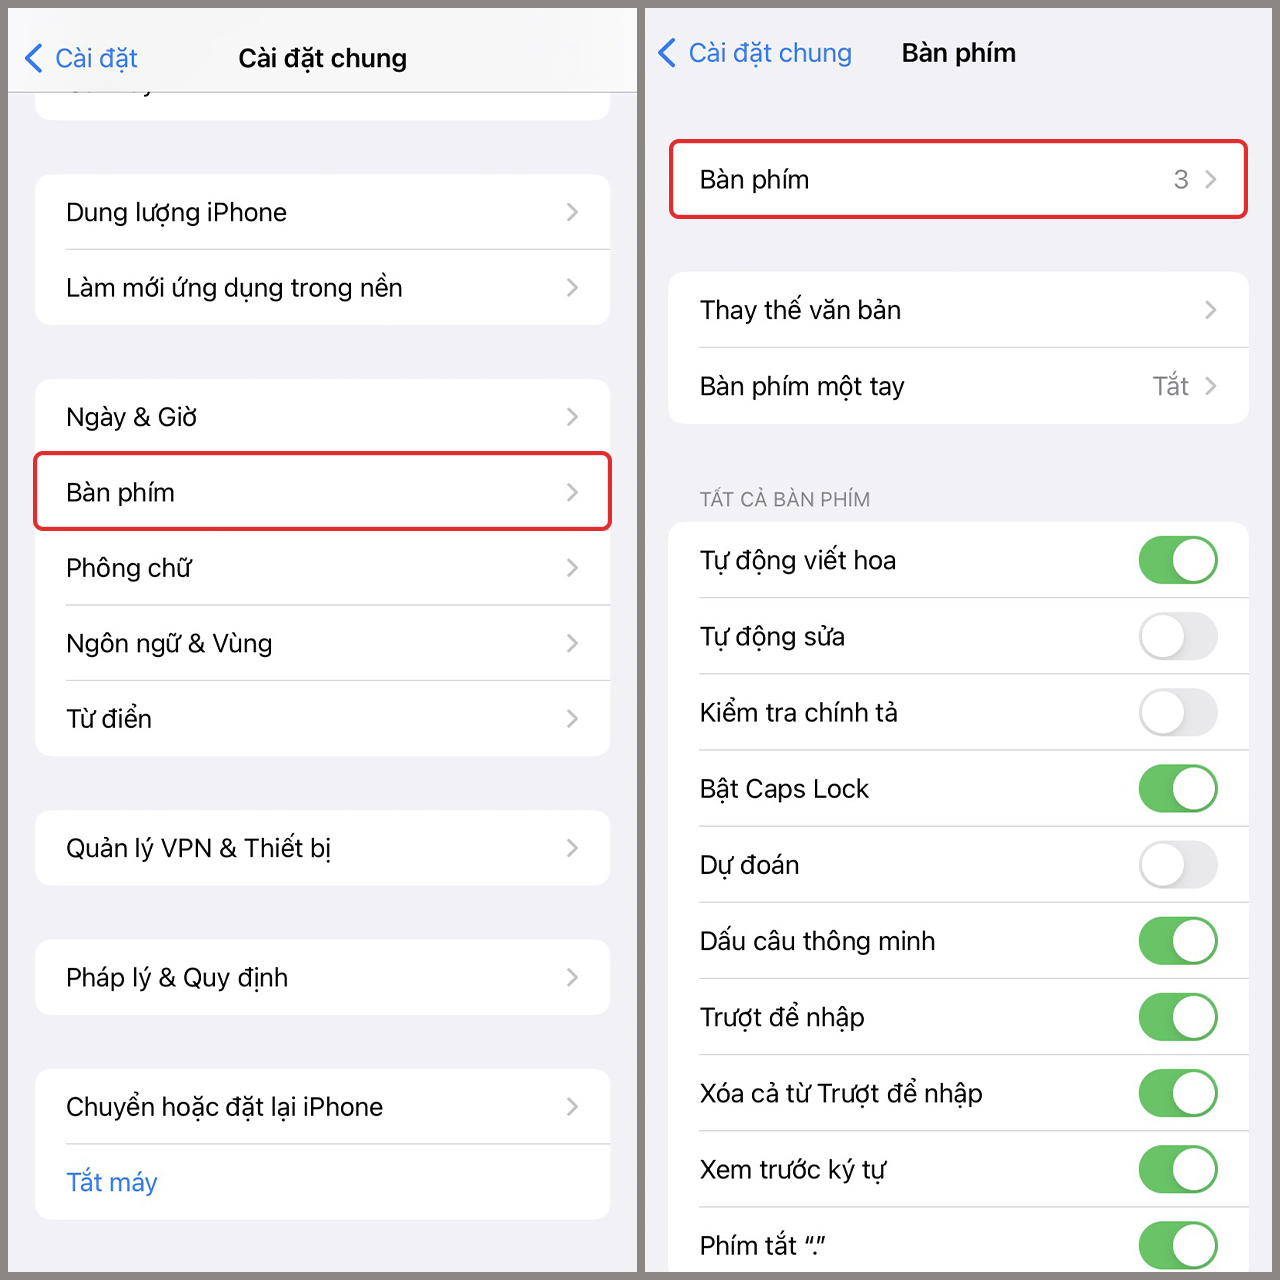 Với hệ điều hành iOS 16 mới nhất, bàn phím tiếng Việt trở nên nhạy hơn, nhanh hơn và dễ sử dụng hơn. Bạn sẽ không còn phải lo ngại về lỗi bàn phím khi gõ tiếng Việt. Bấm vào hình ảnh để đến với thiết bị iOS 16 và khám phá thế giới công nghệ đặc sắc.